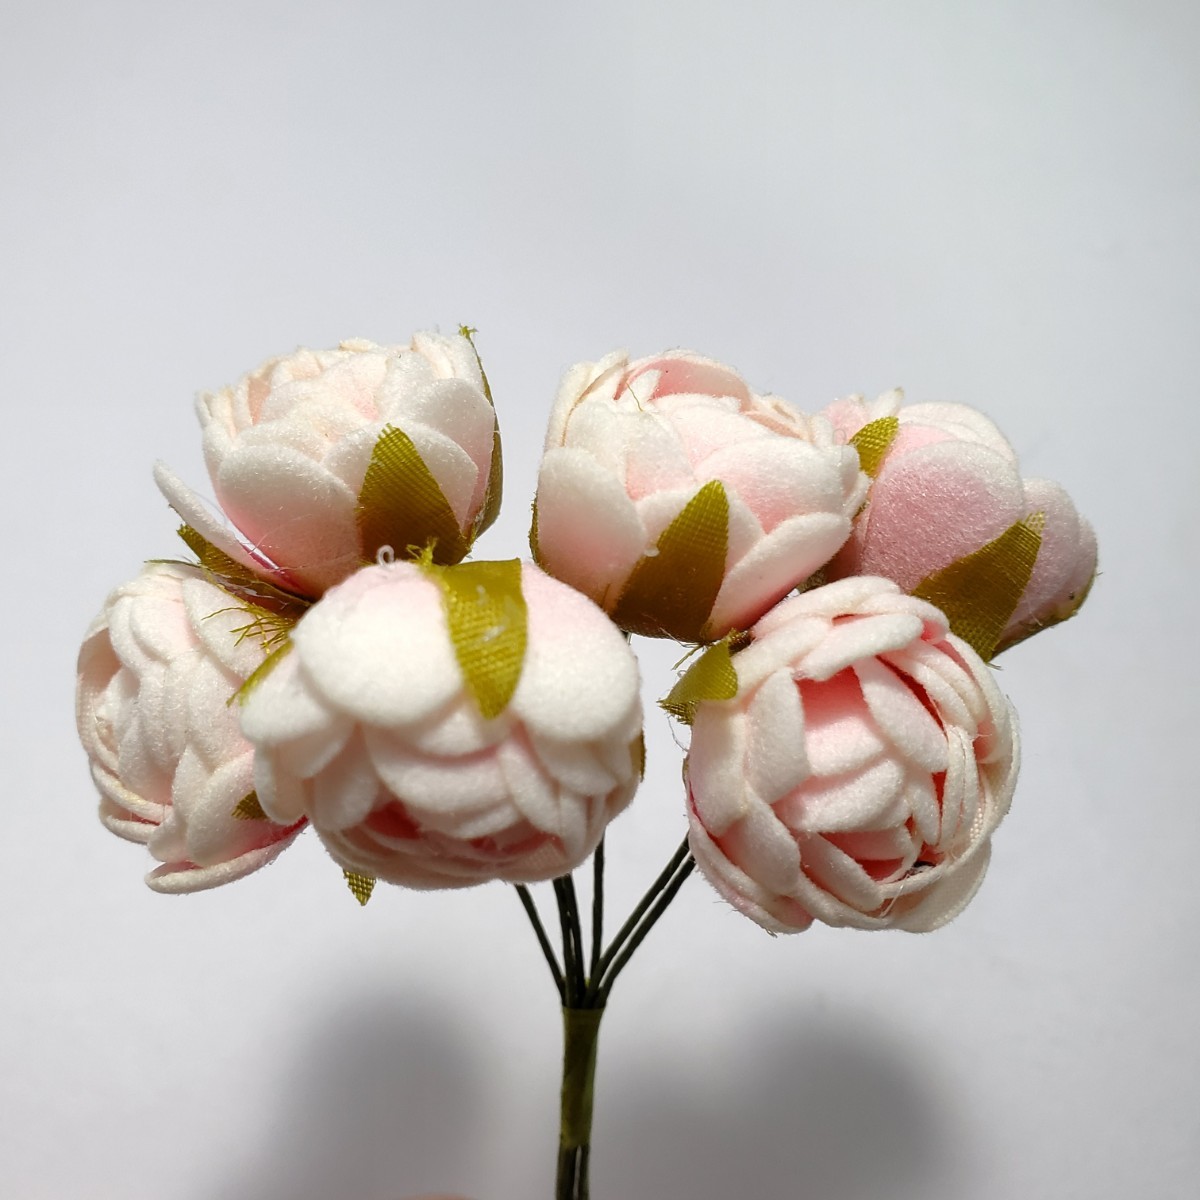 造花 ローズ バラ 巻バラ 葉付き ワイヤー付き 人工花直径2cm 30本セット 手芸 結婚式 誕生日 パーティ 送料無料